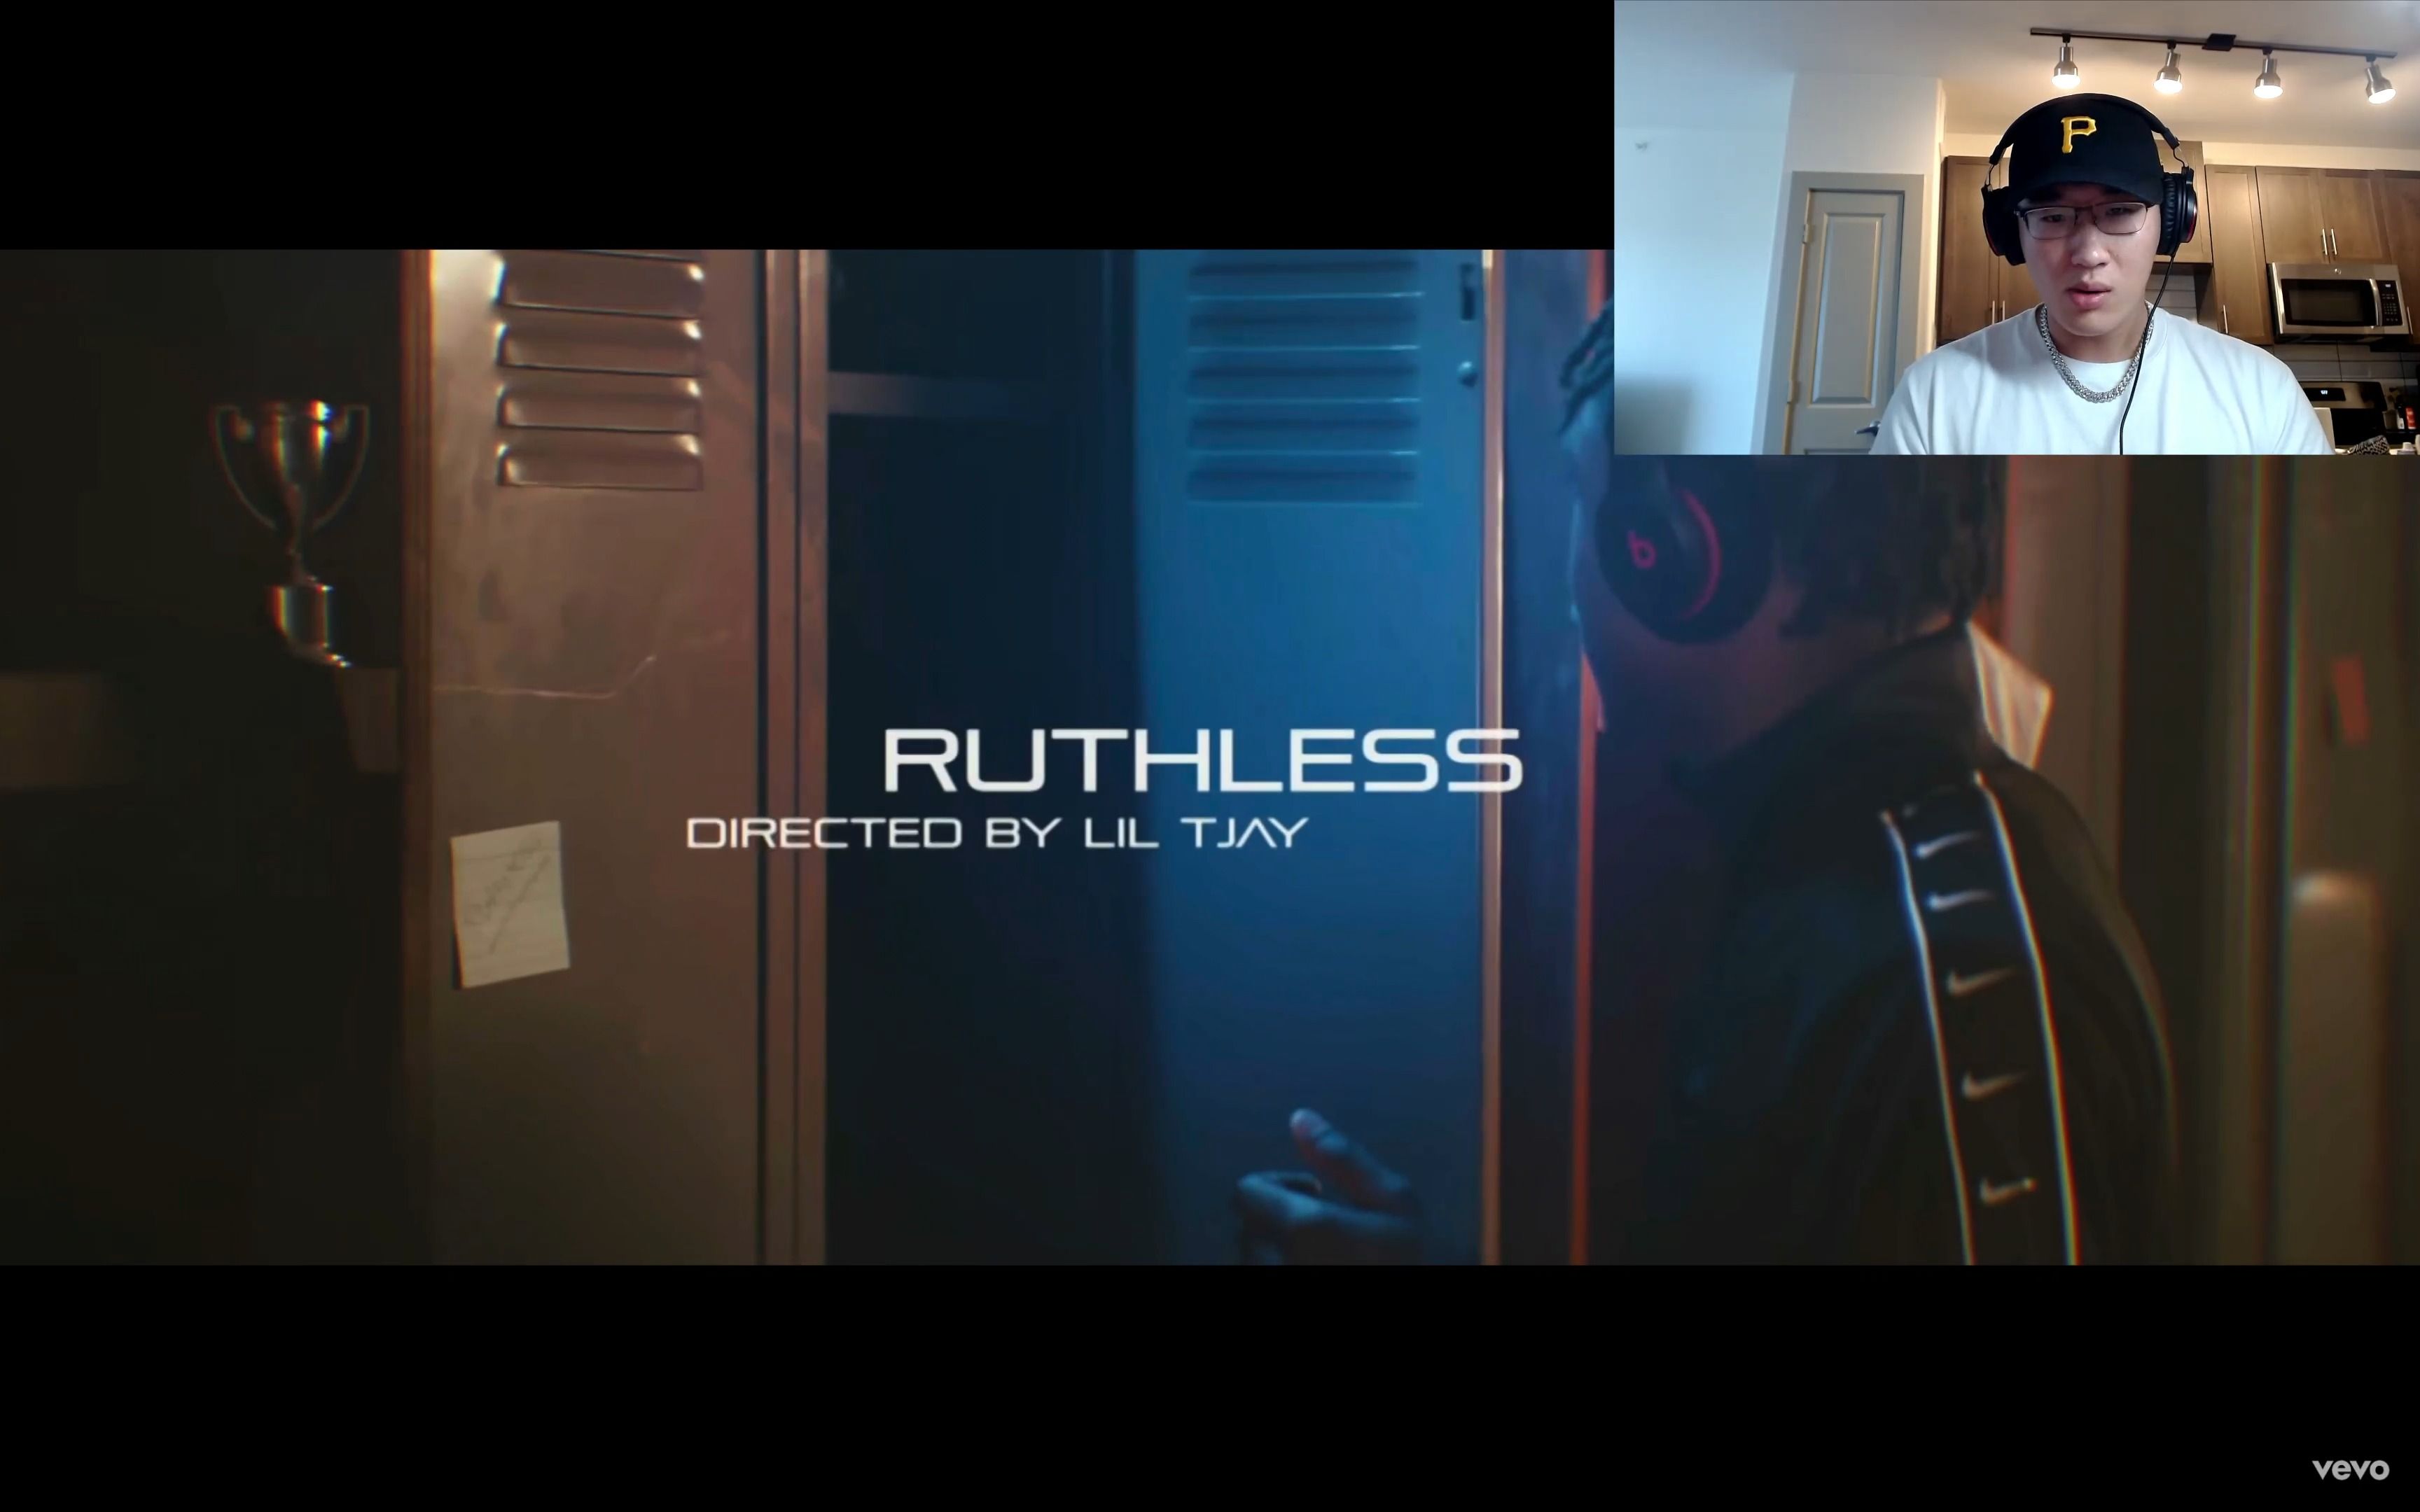 纽约高中男篮队长 Lil Tjay - Ruthless MV赏析